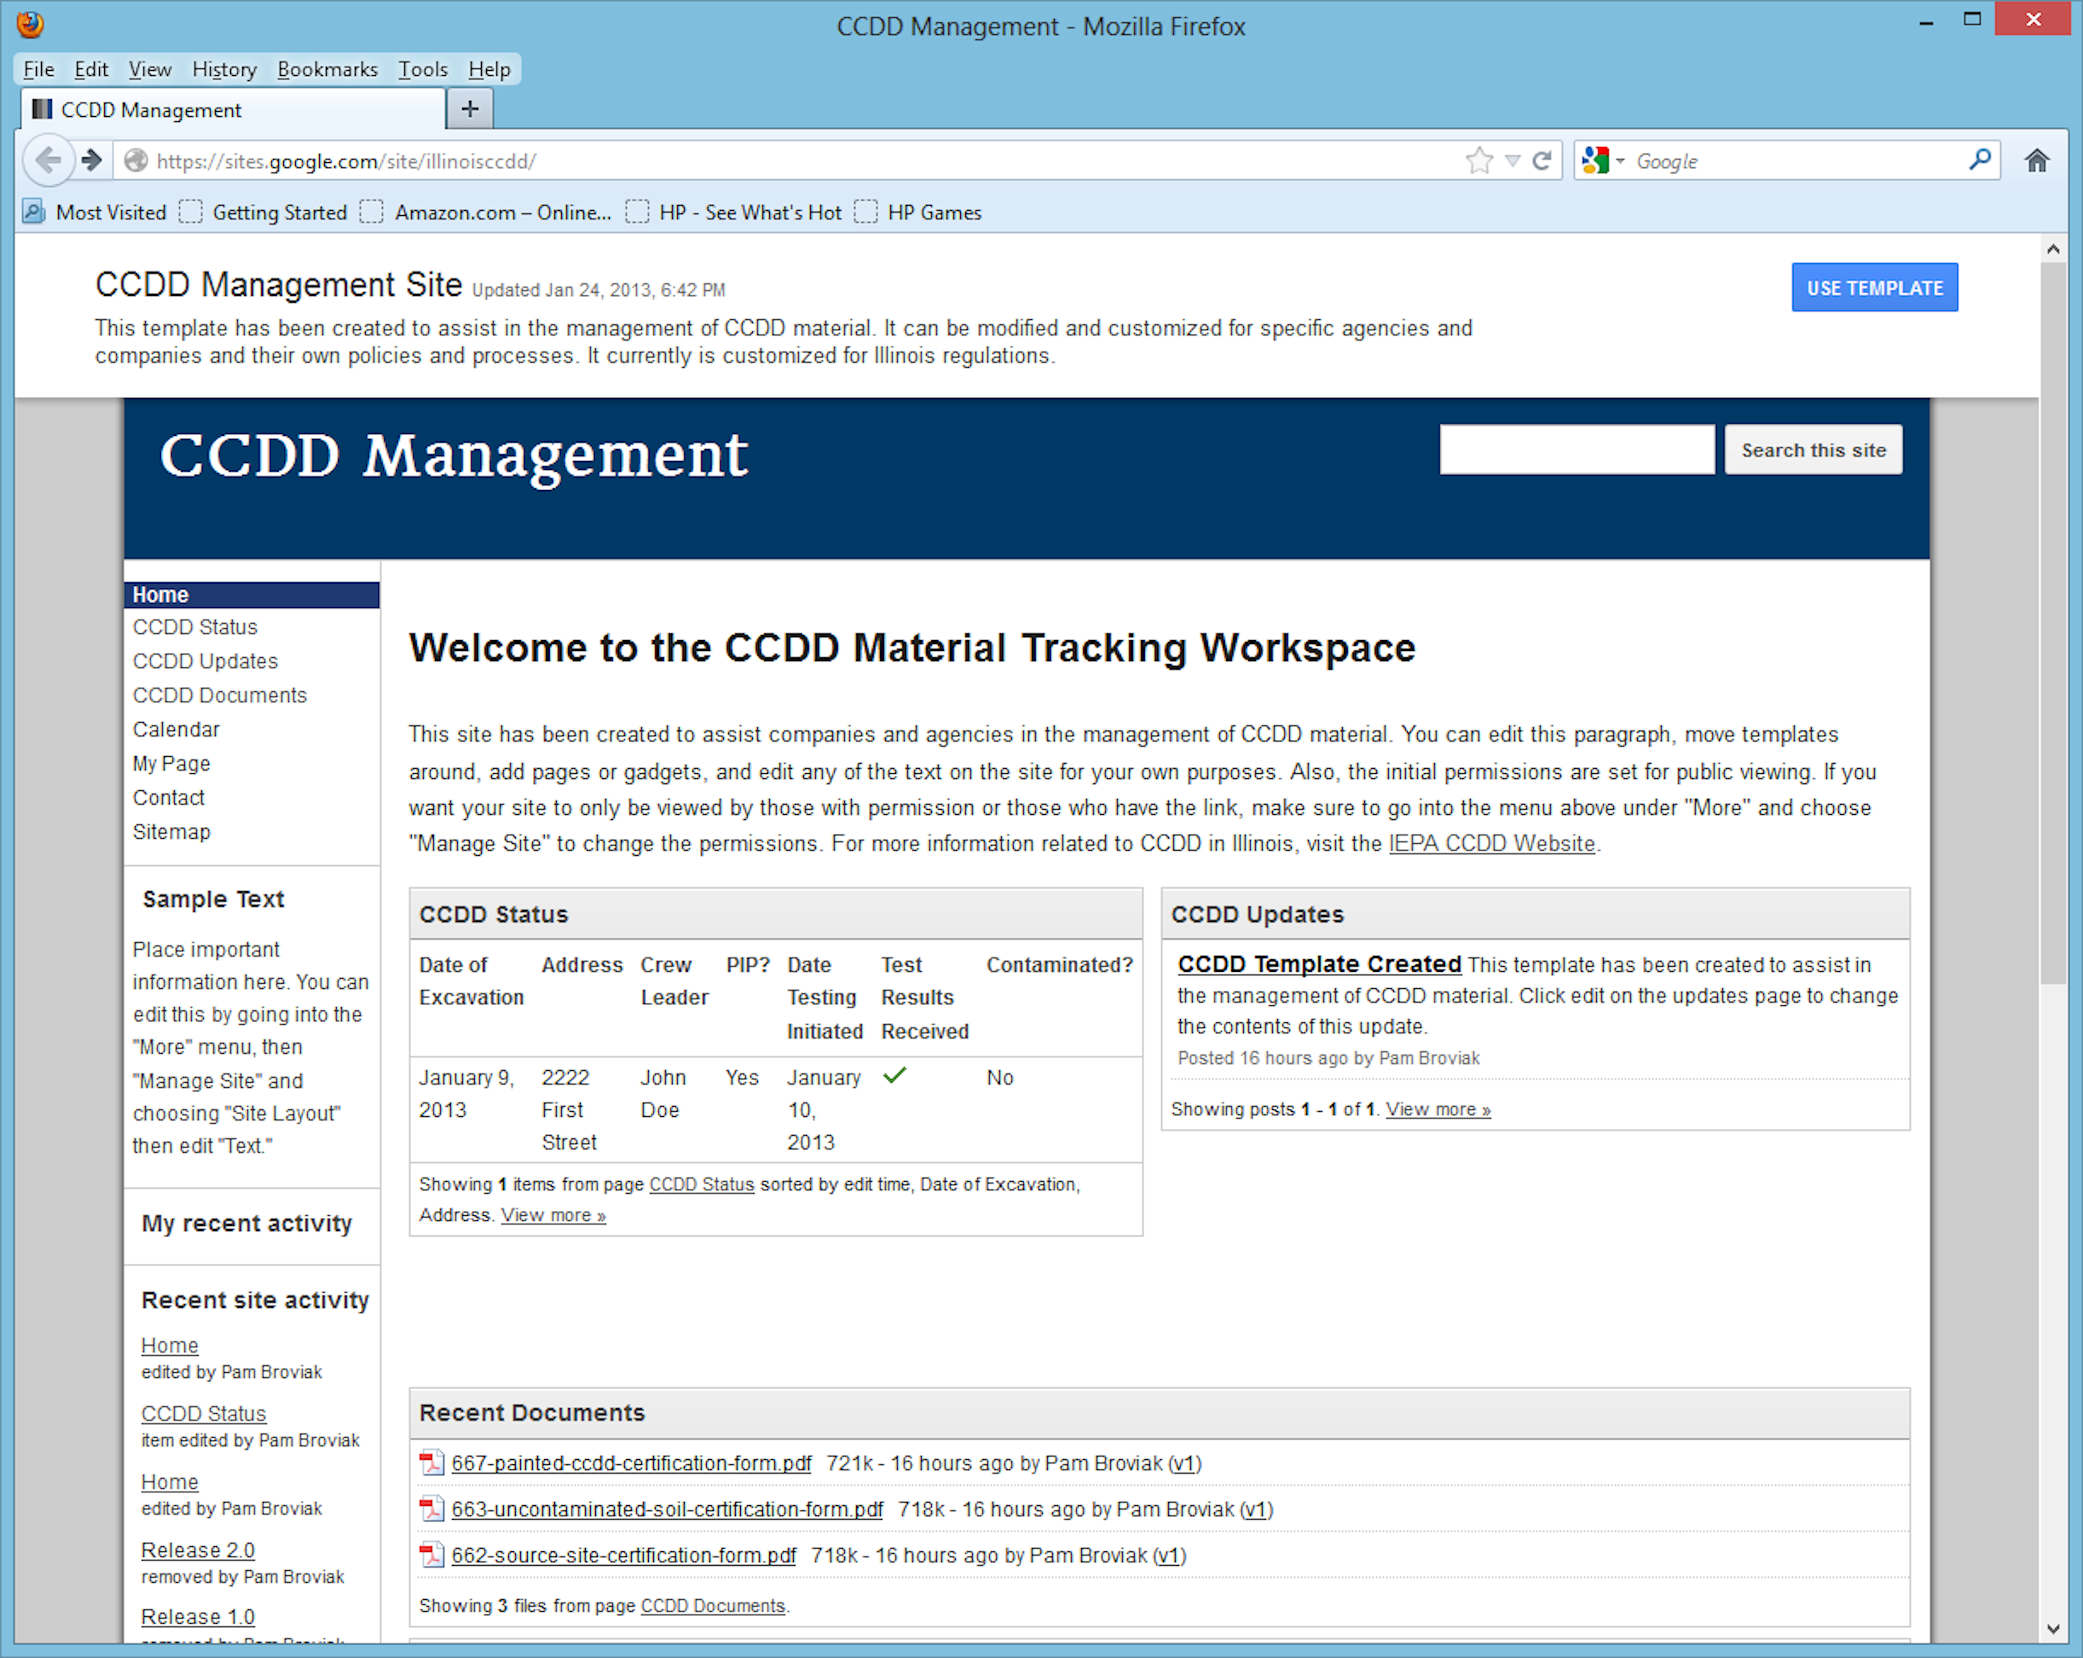 CCDD Management Site